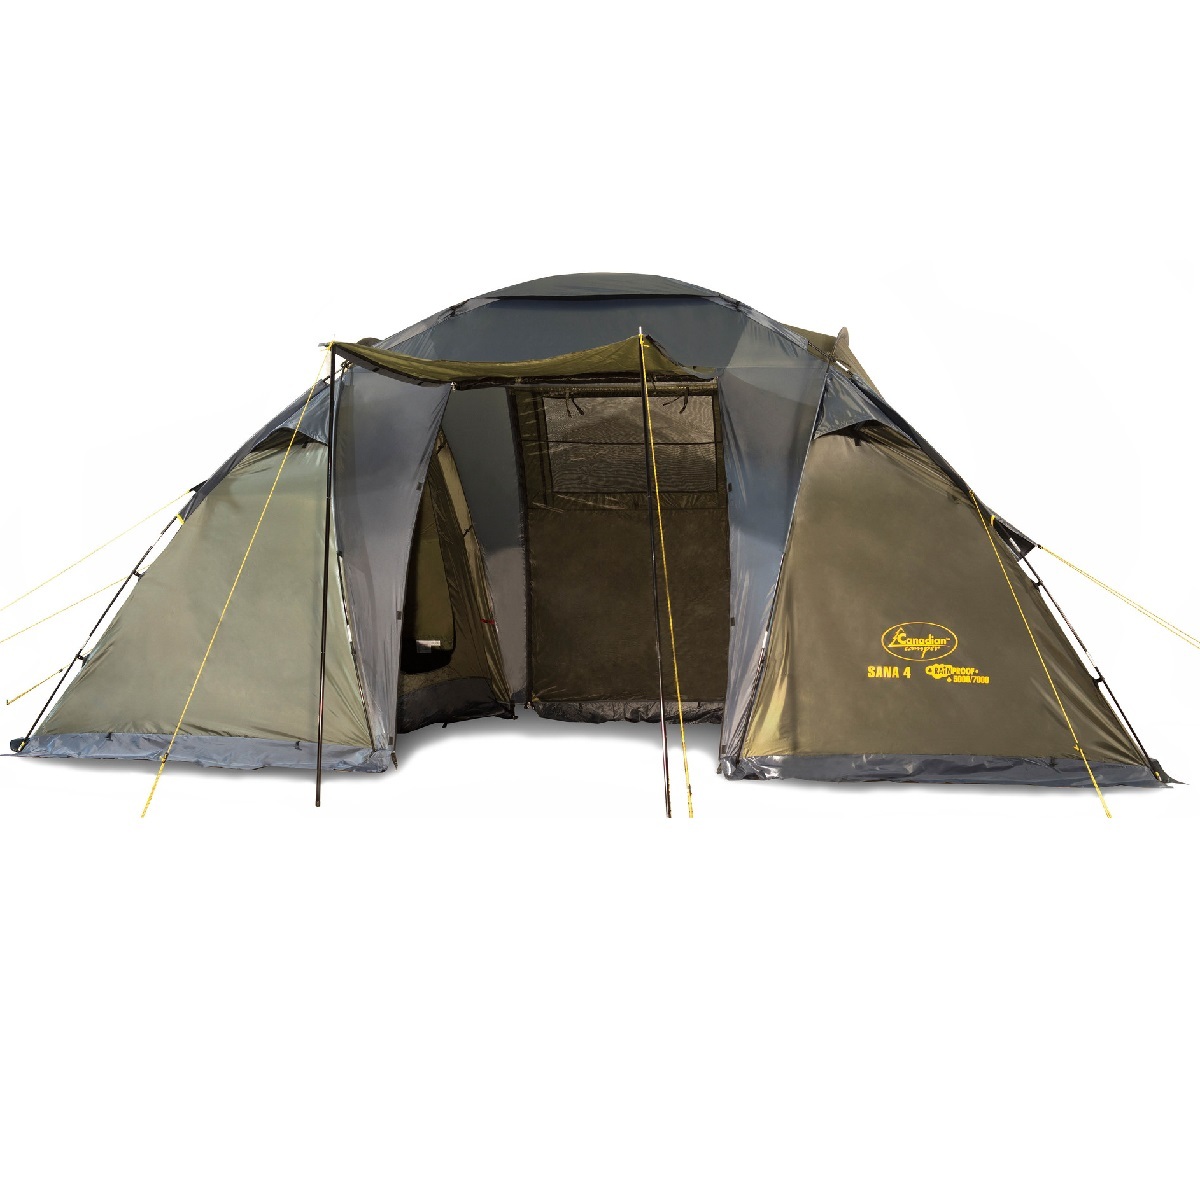 фото Палатка для кемпинга с двумя спальными отделениями canadian camper sana 4 (forest)